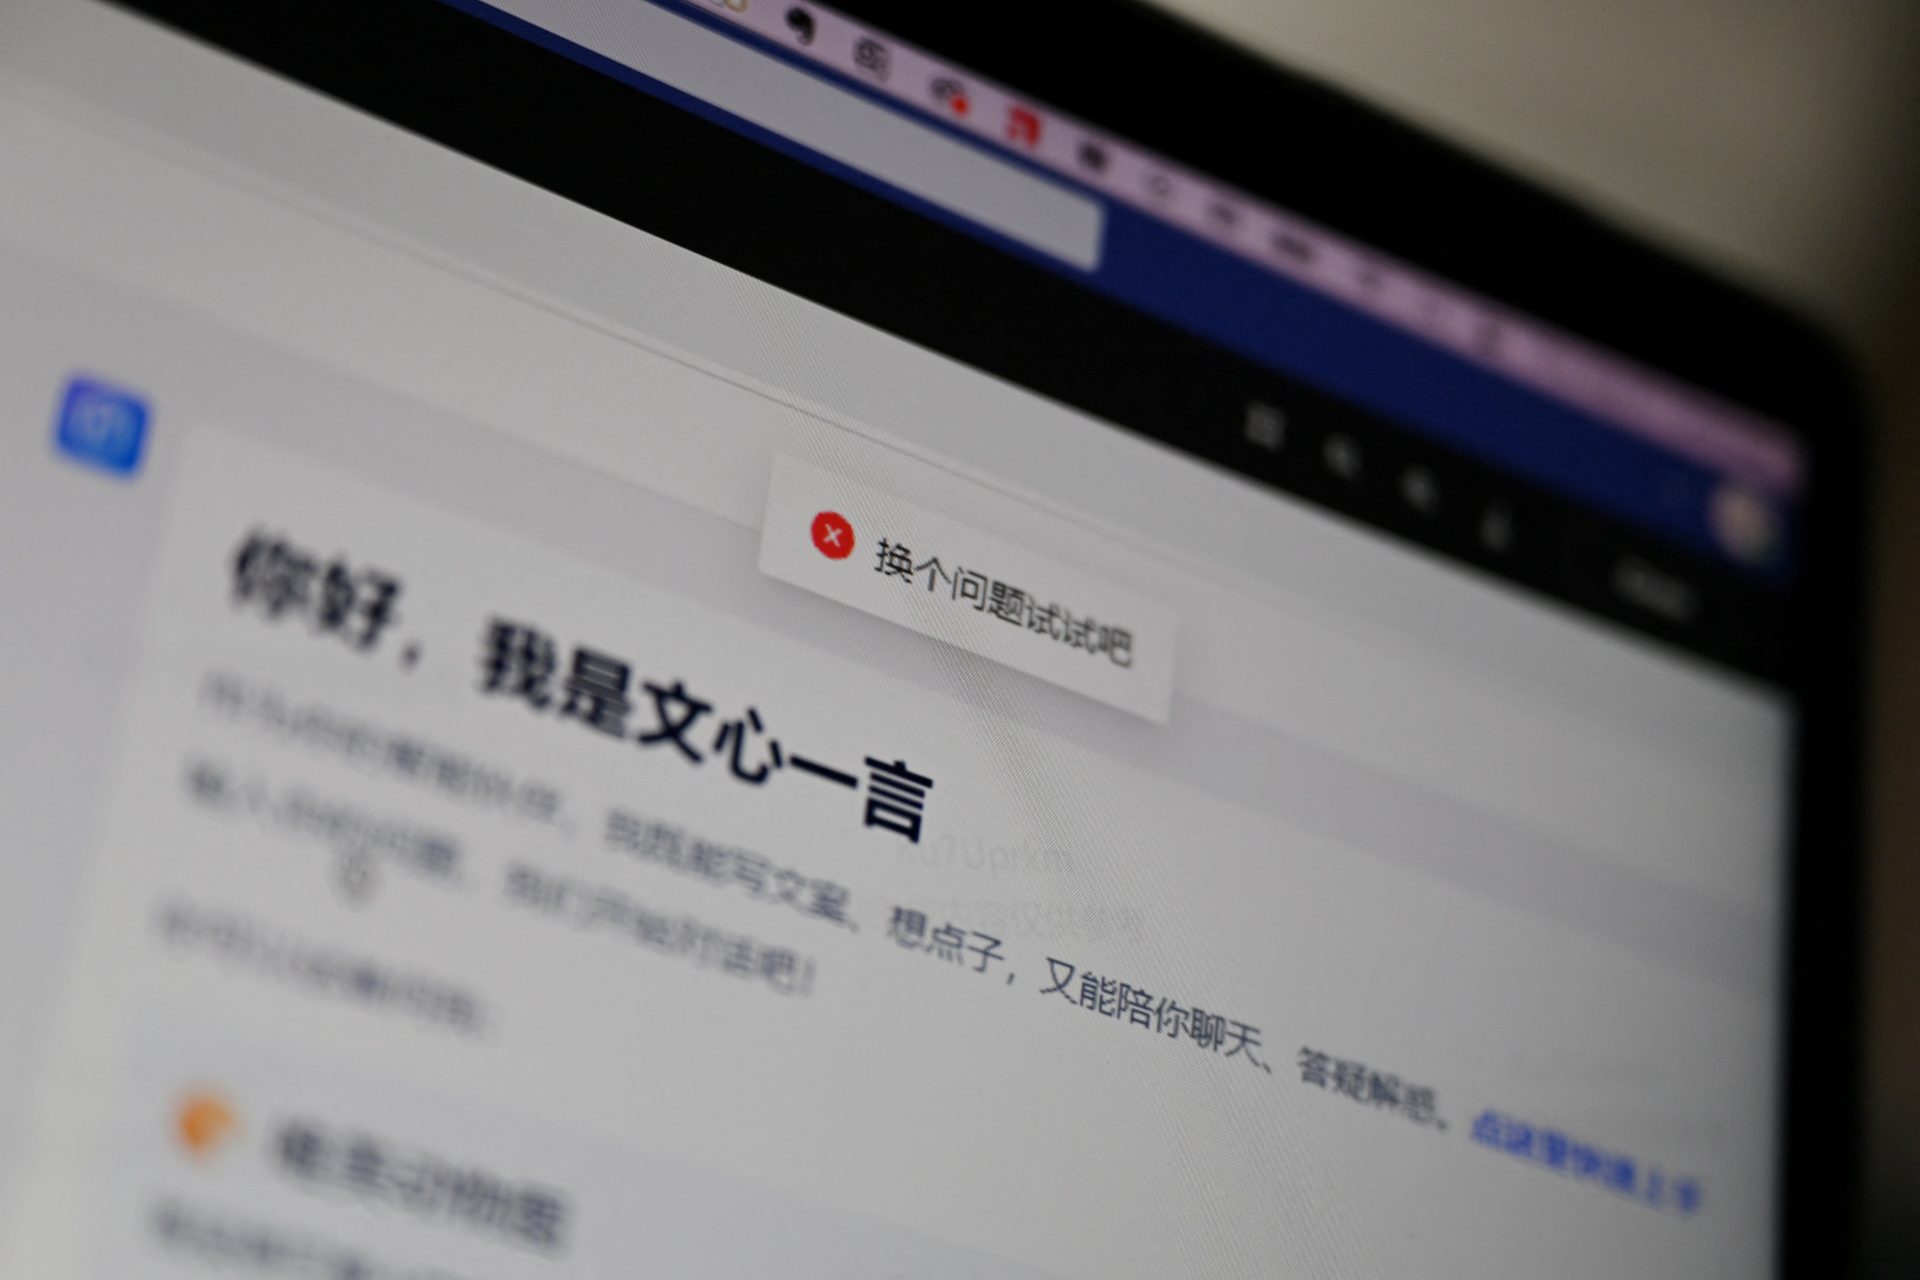 Ernie Bot, le concurrent de ChatGPT, atteint 200M d'utilisateurs selon Baidu